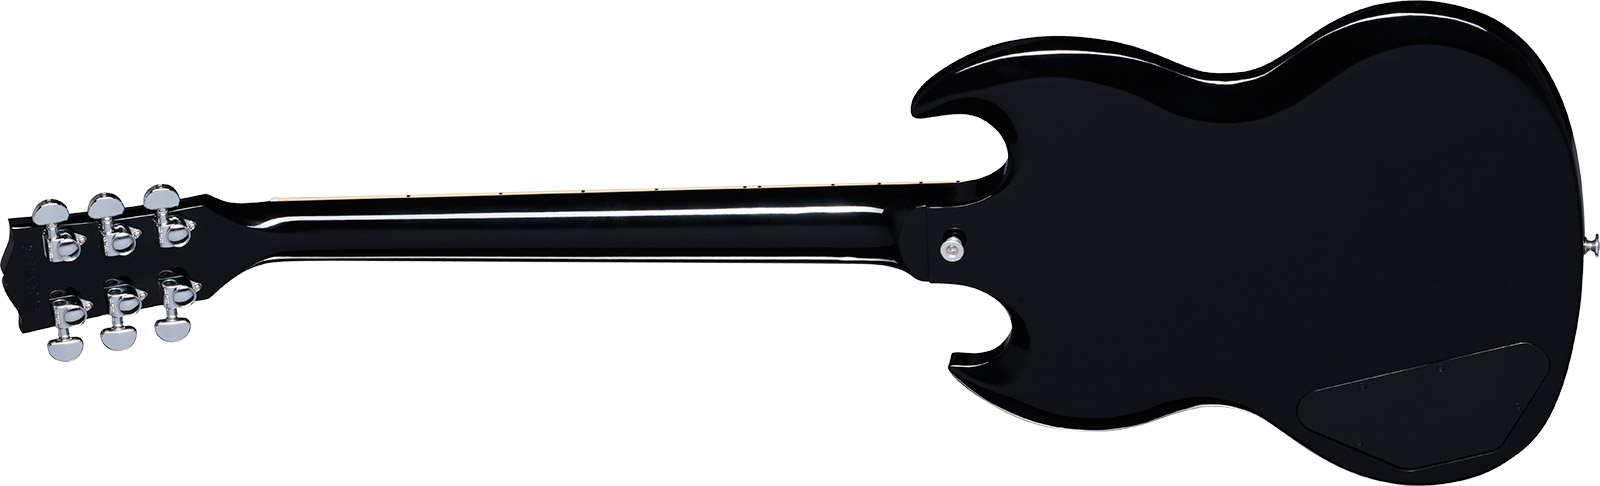 Gibson Sg Standard Custom Color 2h Ht Rw - Pelham Blue Burst - Guitarra eléctrica de doble corte - Variation 1